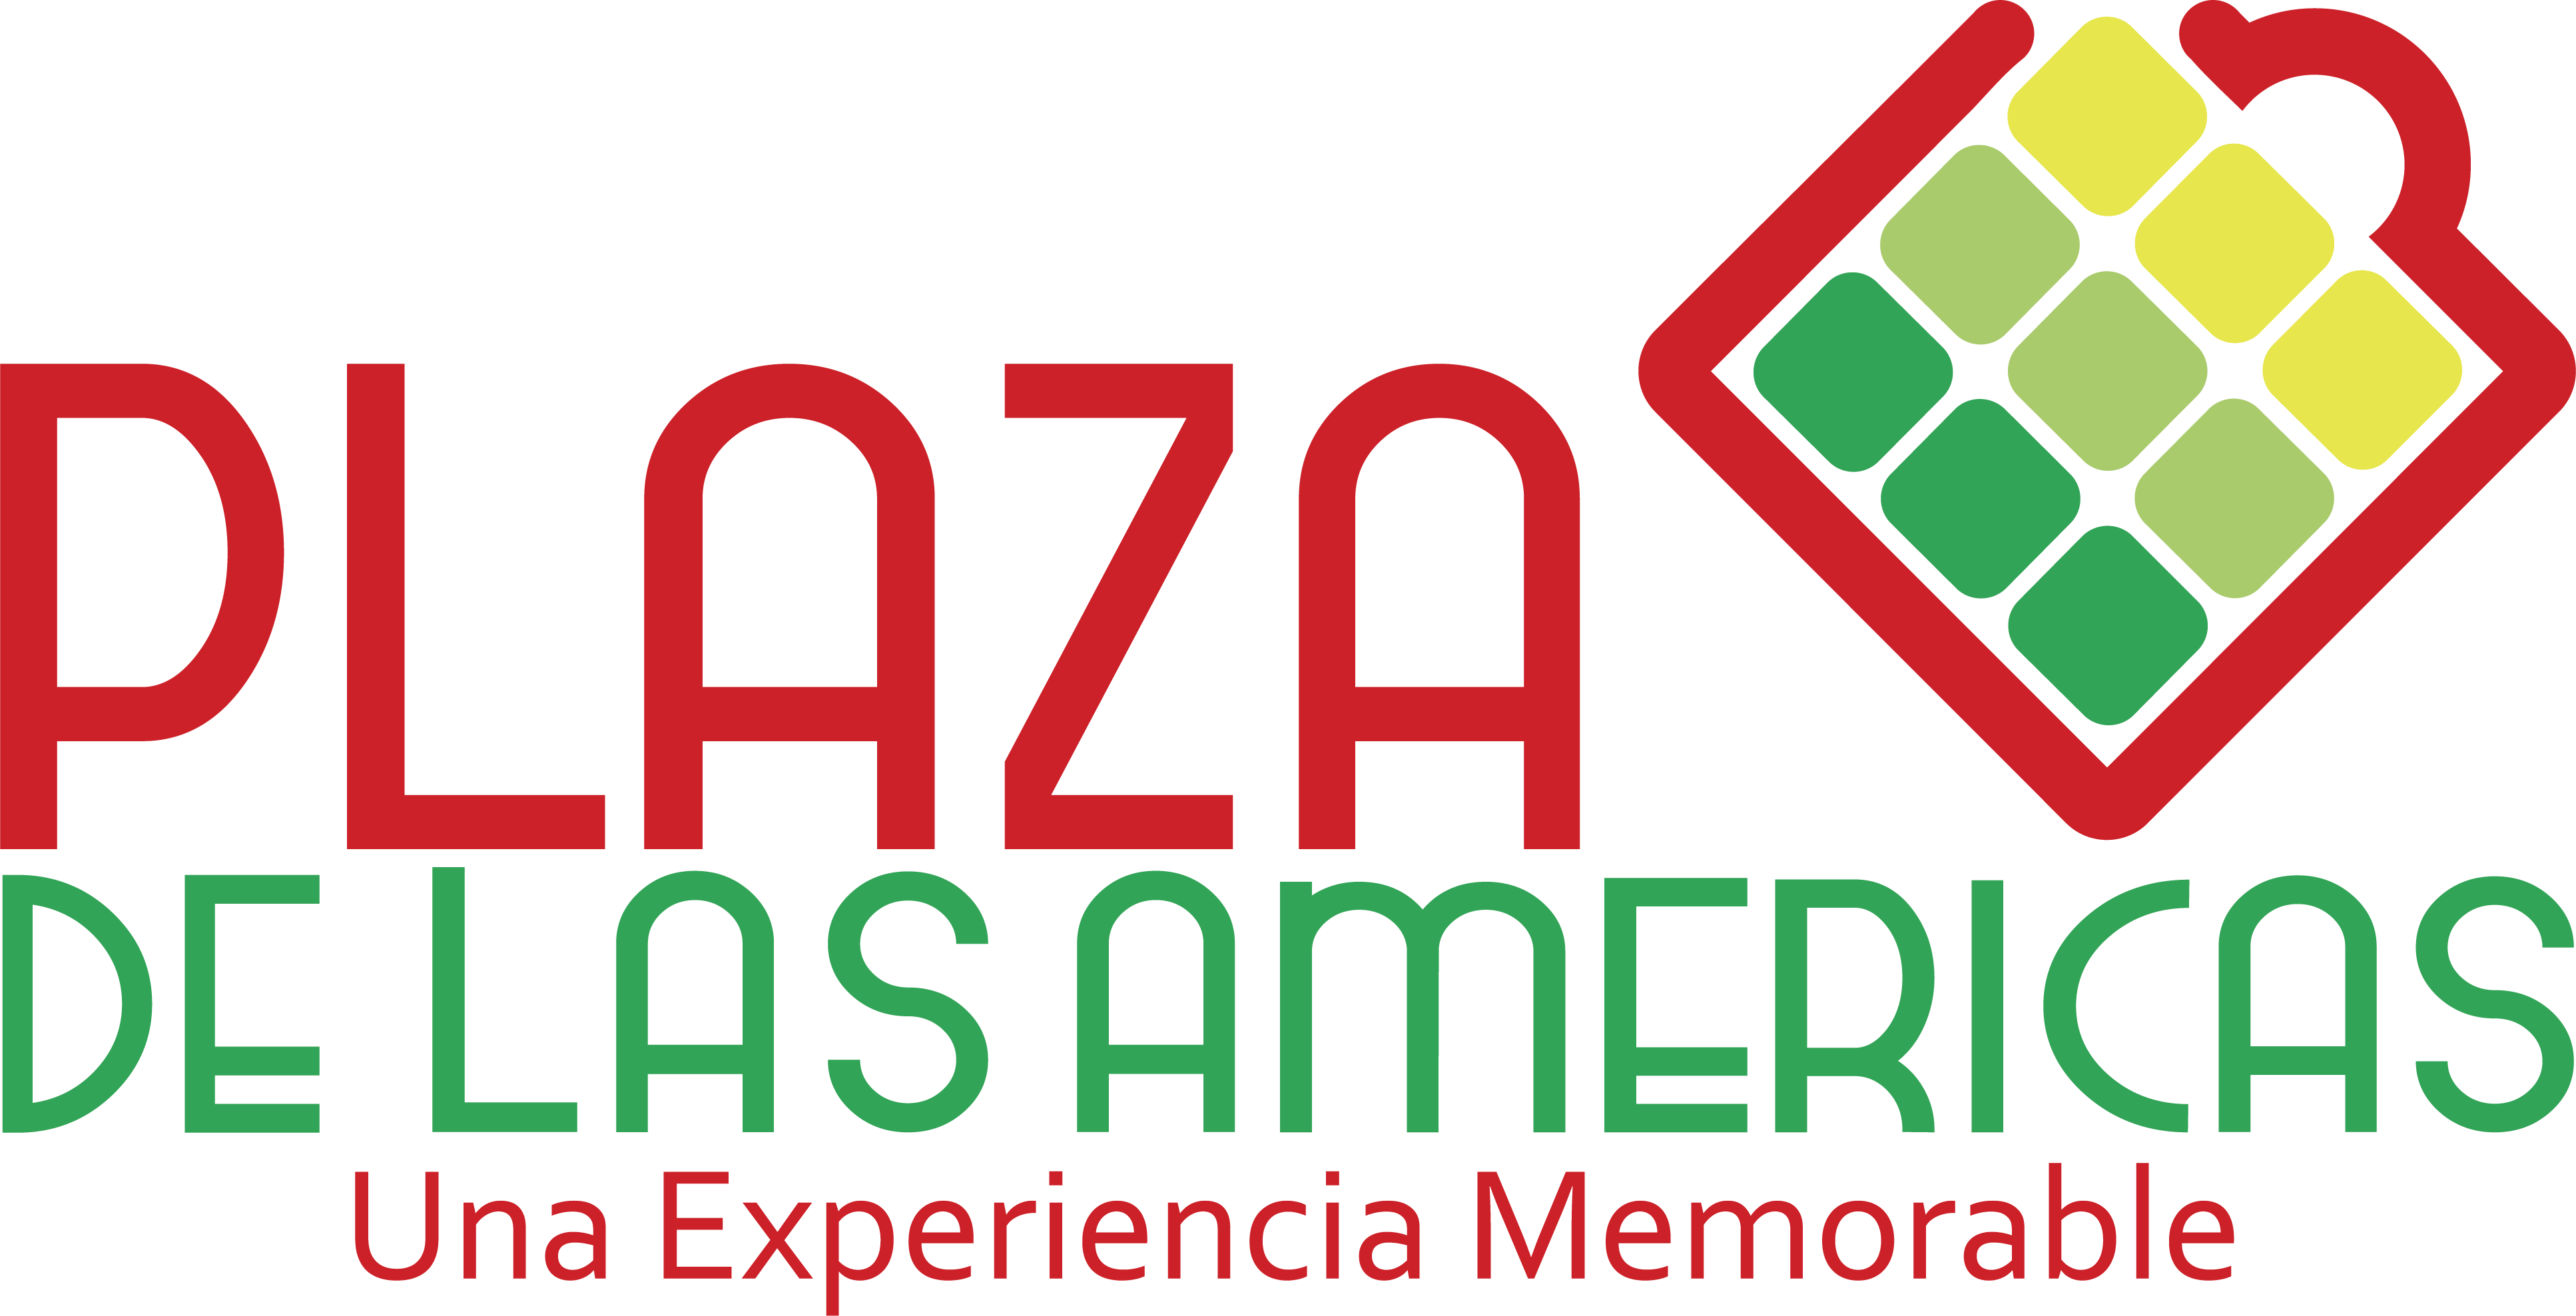 Americas Logo - LOGO CC PLAZA DE LAS AMERICAS CON PANTONES - Fundación Colombianitos